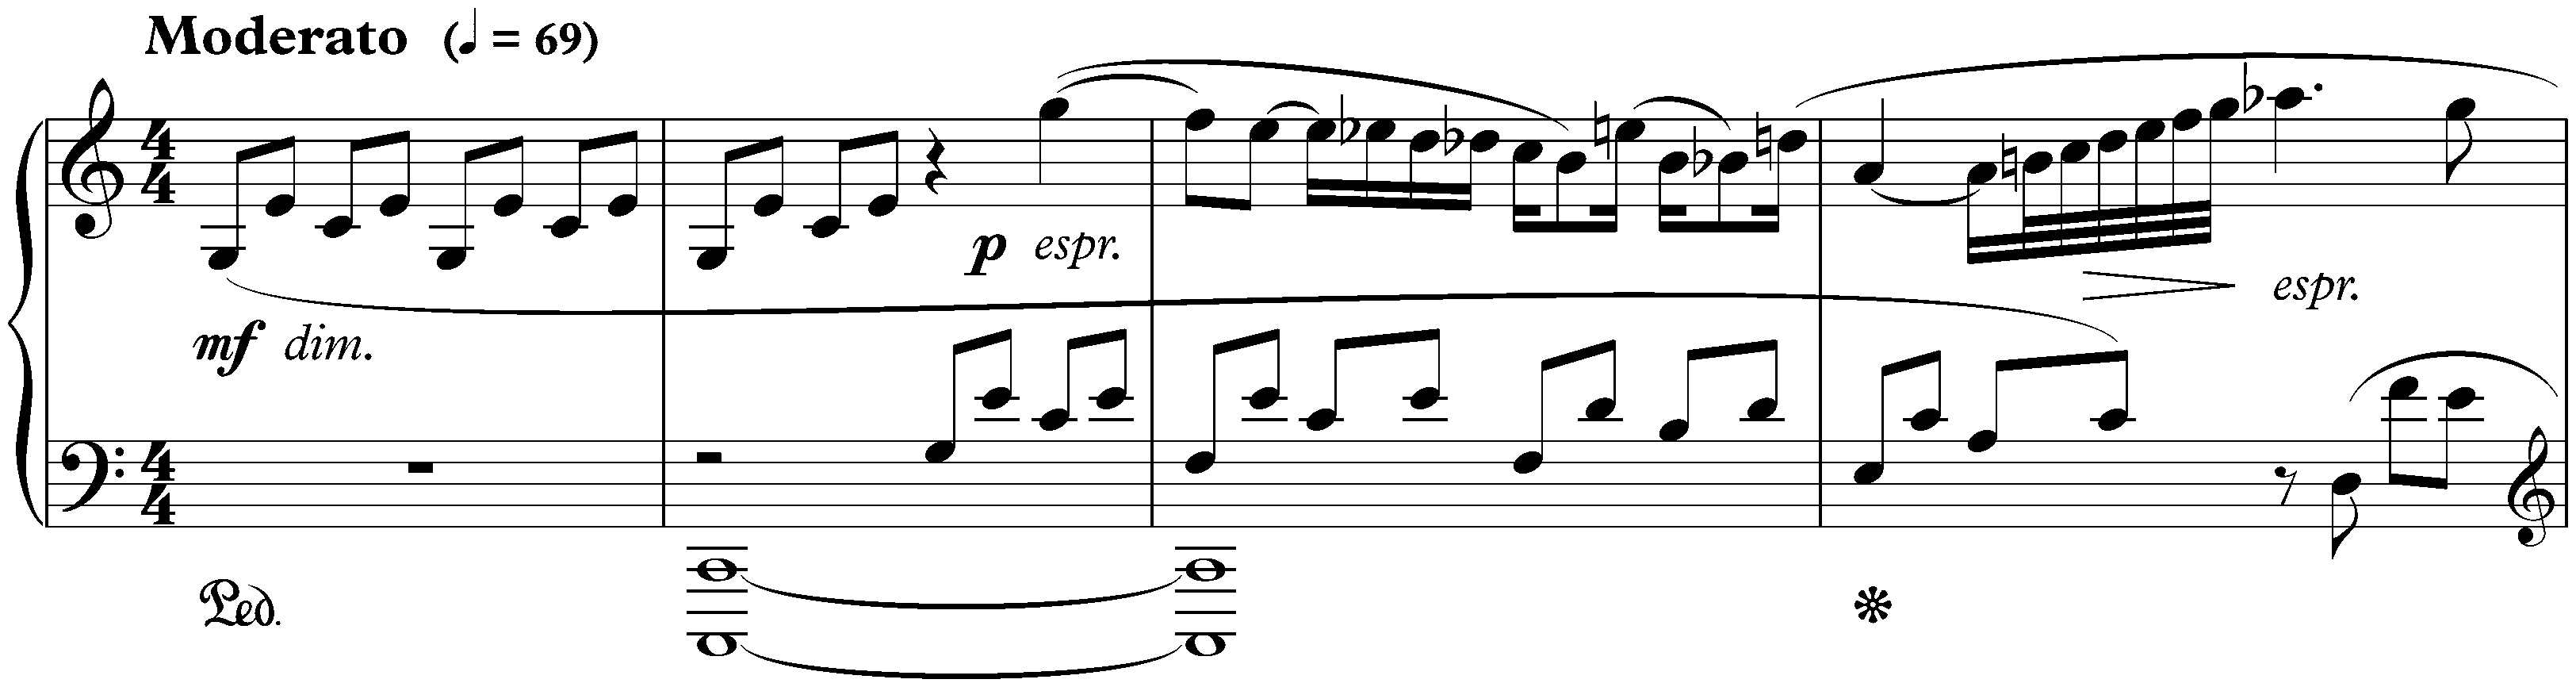 Twenty-four Preludes, op. 34; 1. C major